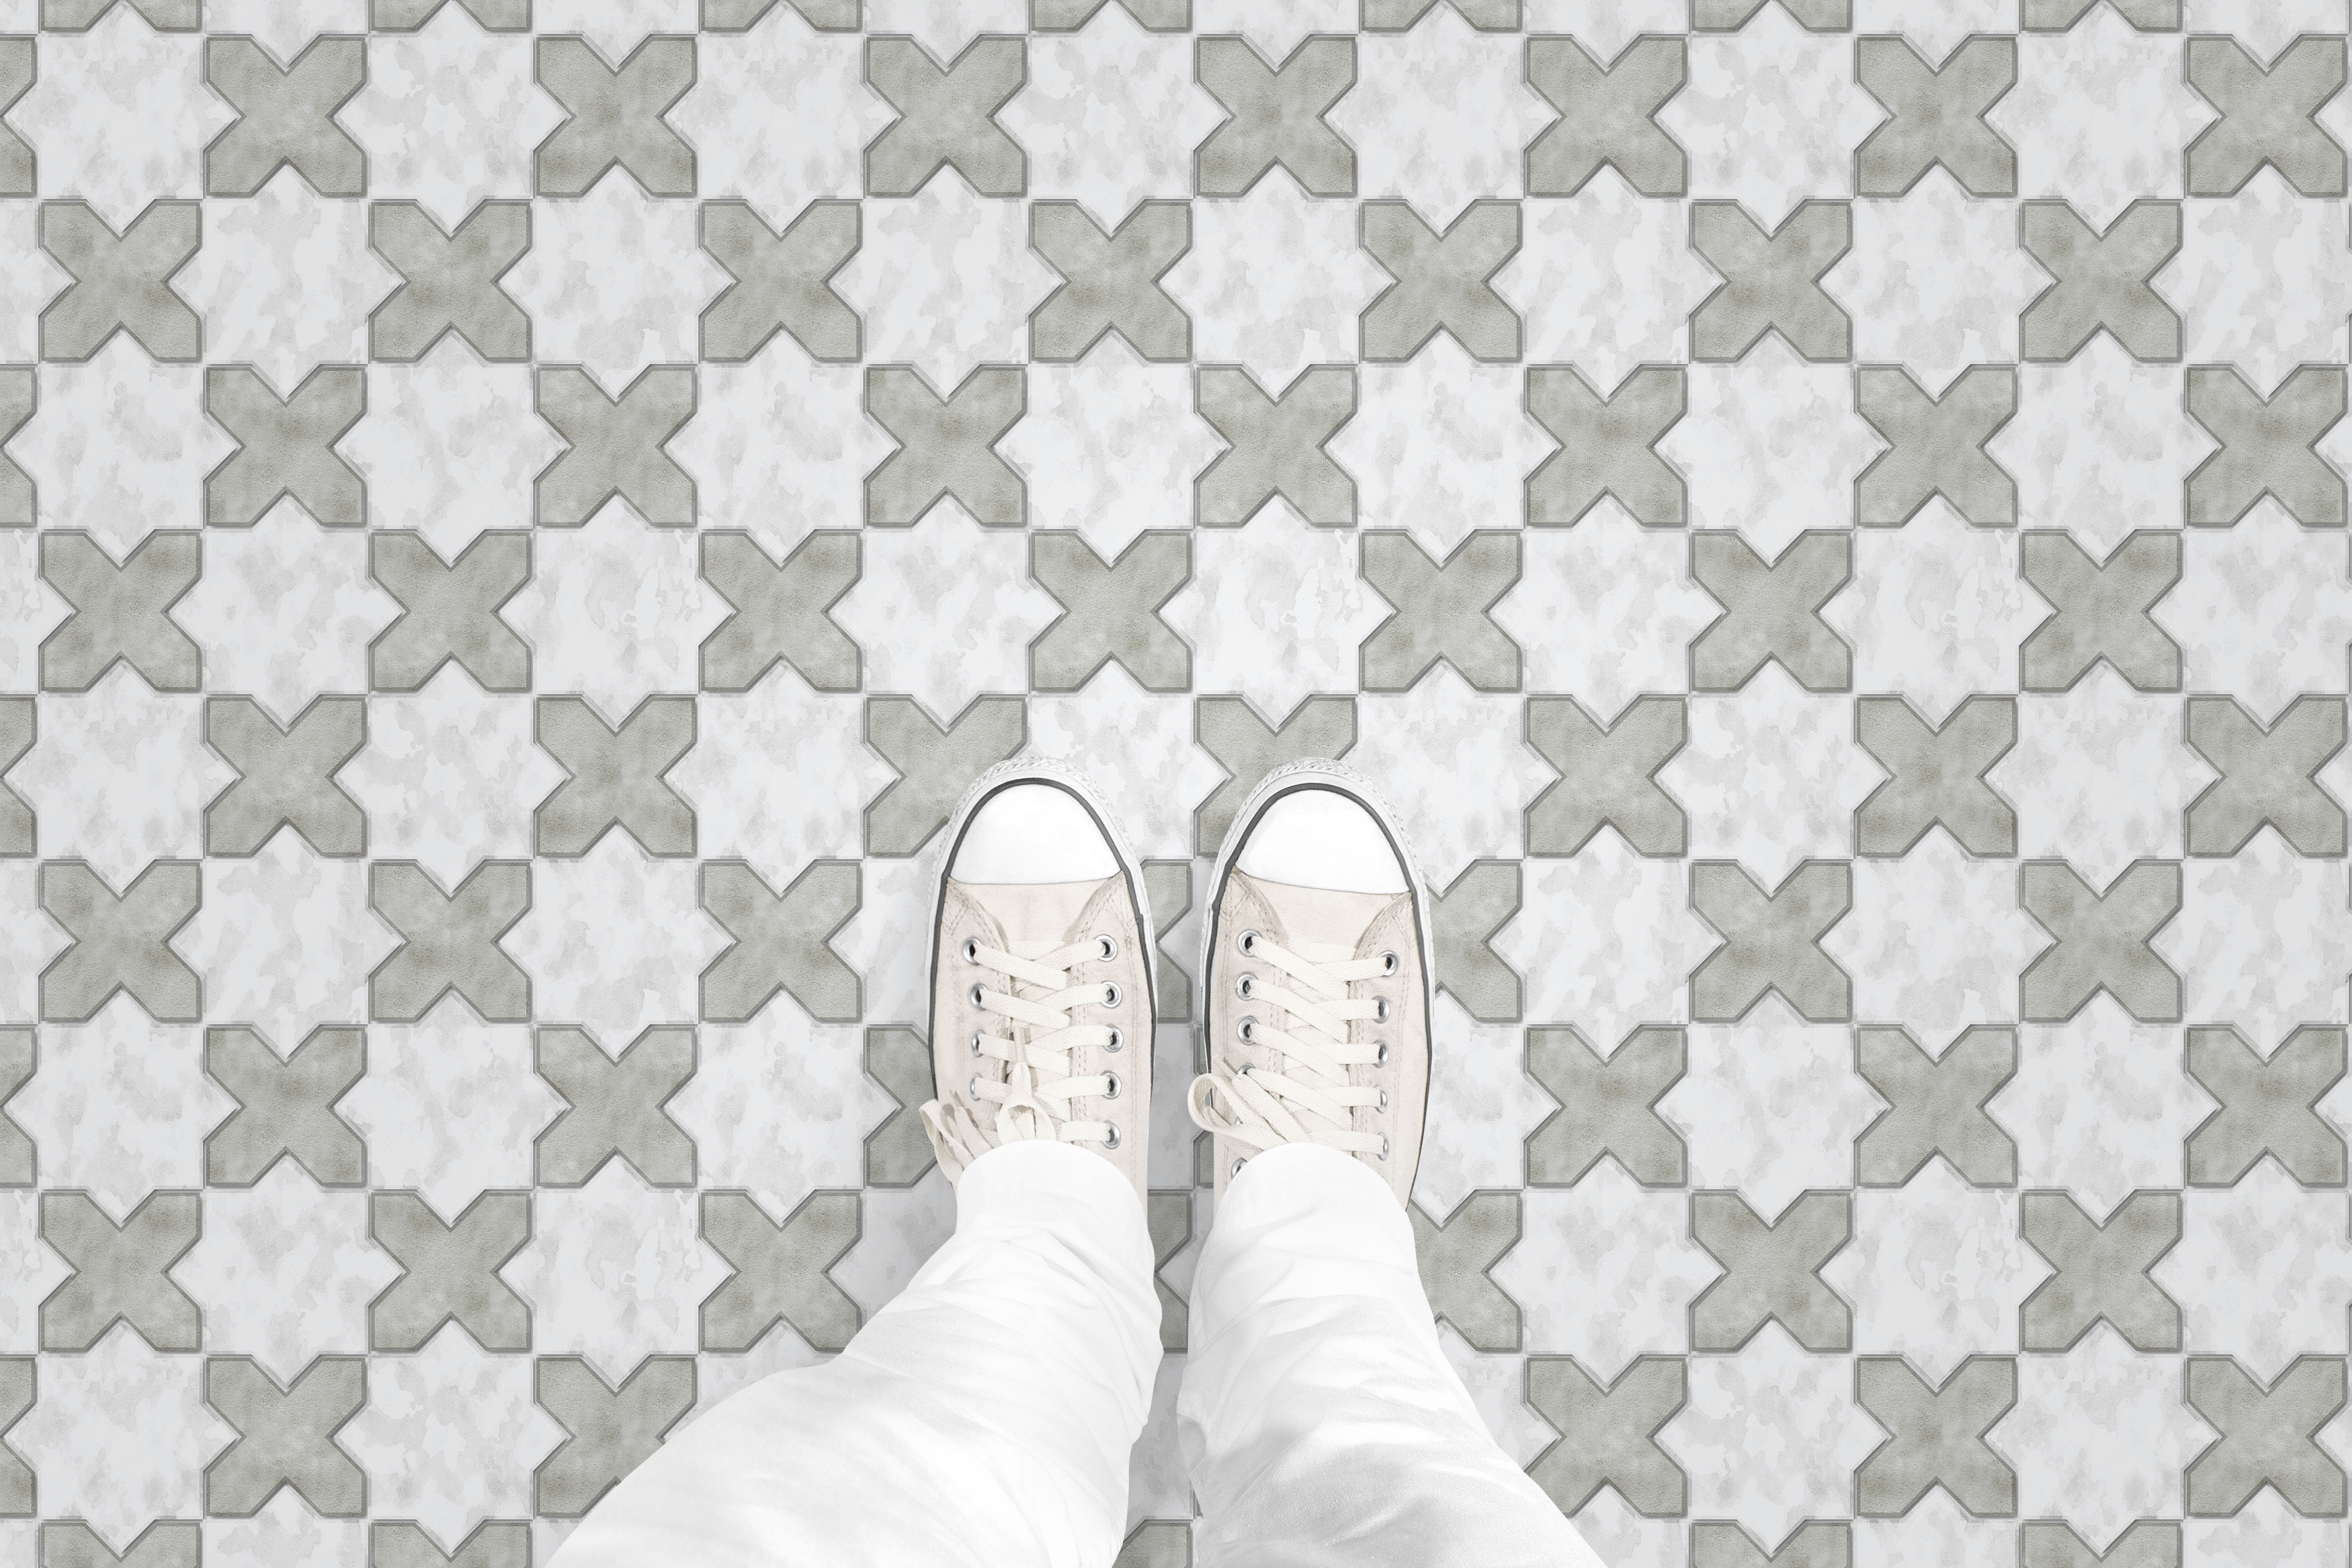 Moroccan Tile floor_feet_shop.gif_p2238a1.jpg